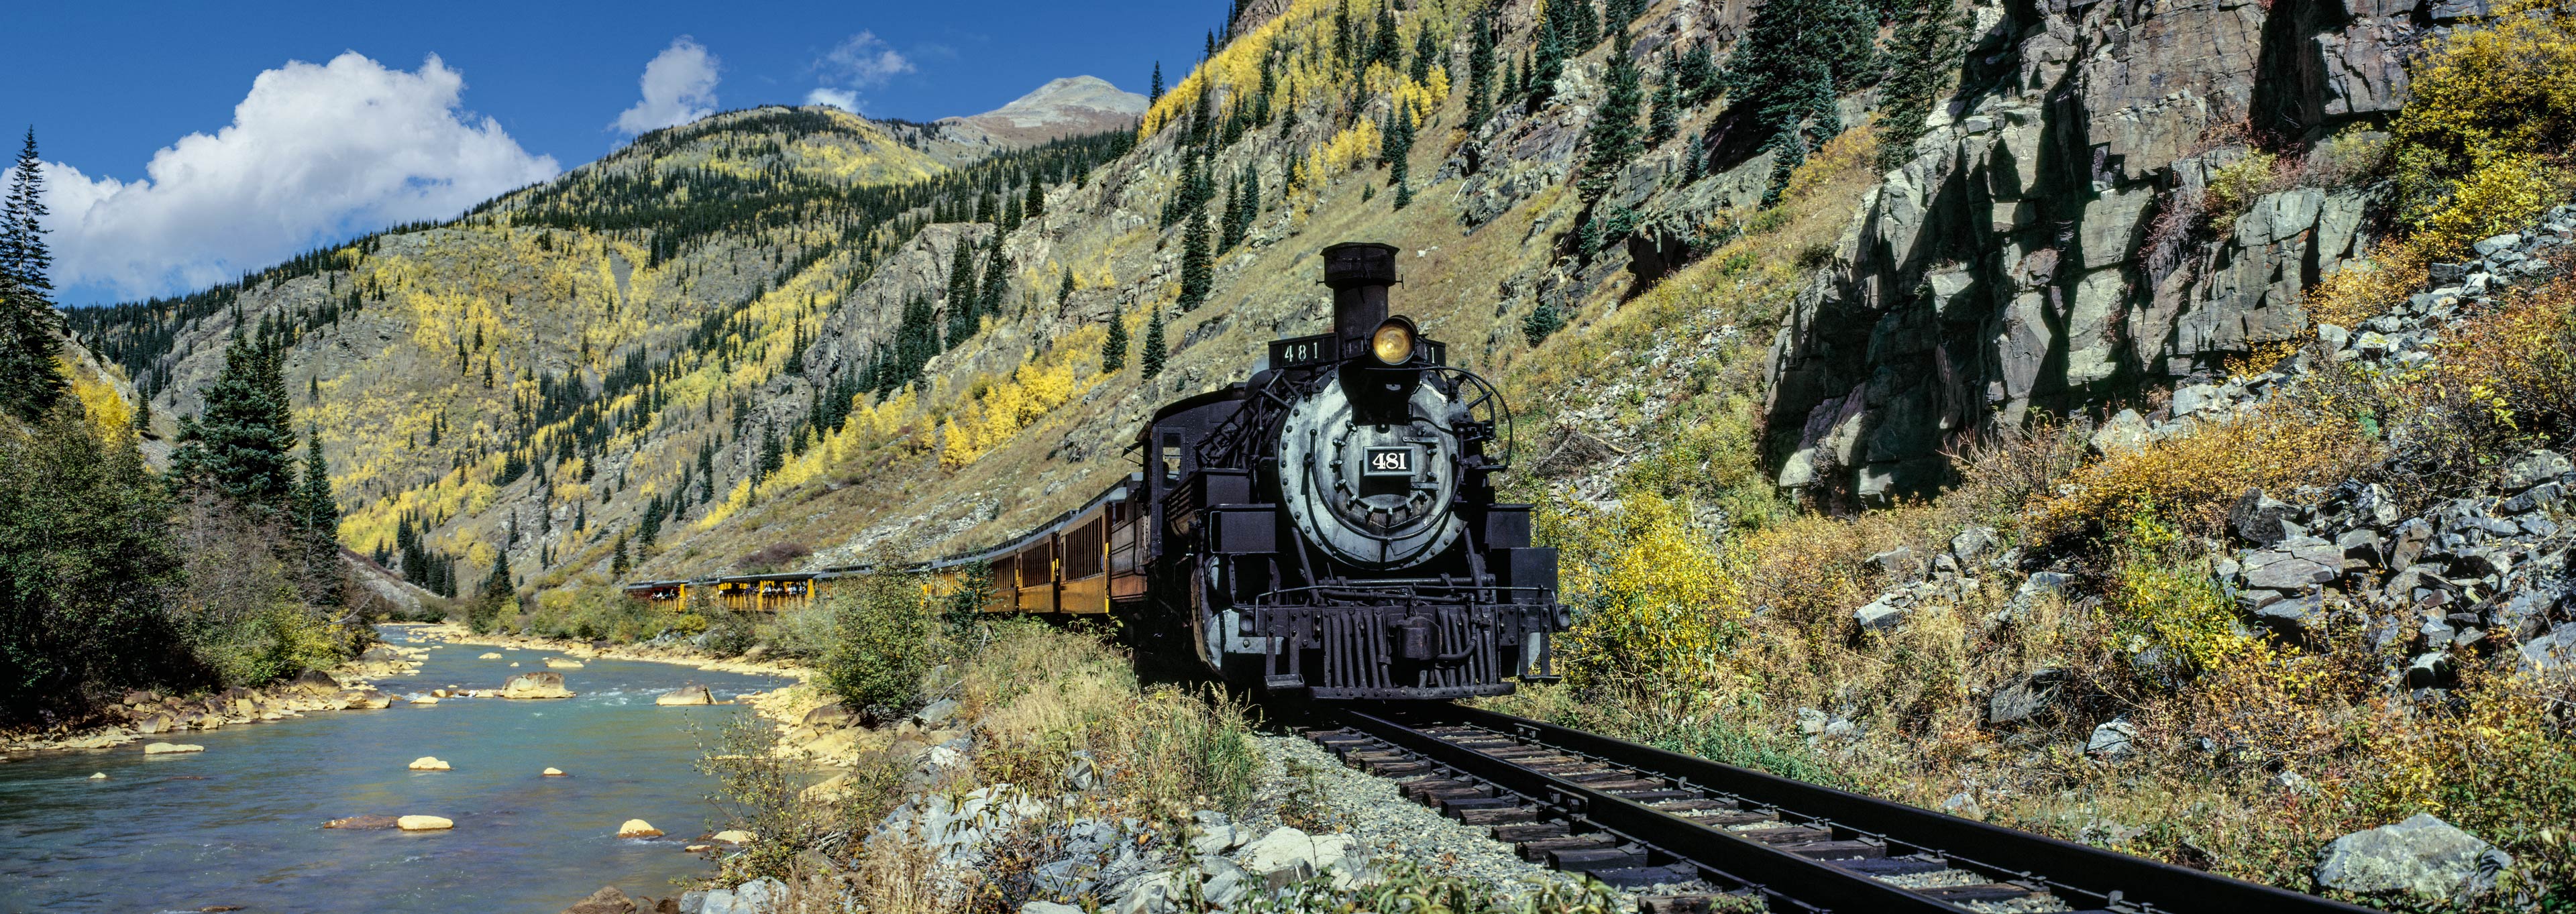 Durango and Silverton Narrow Gauge Railroad,  Animas River, Colorado, USA